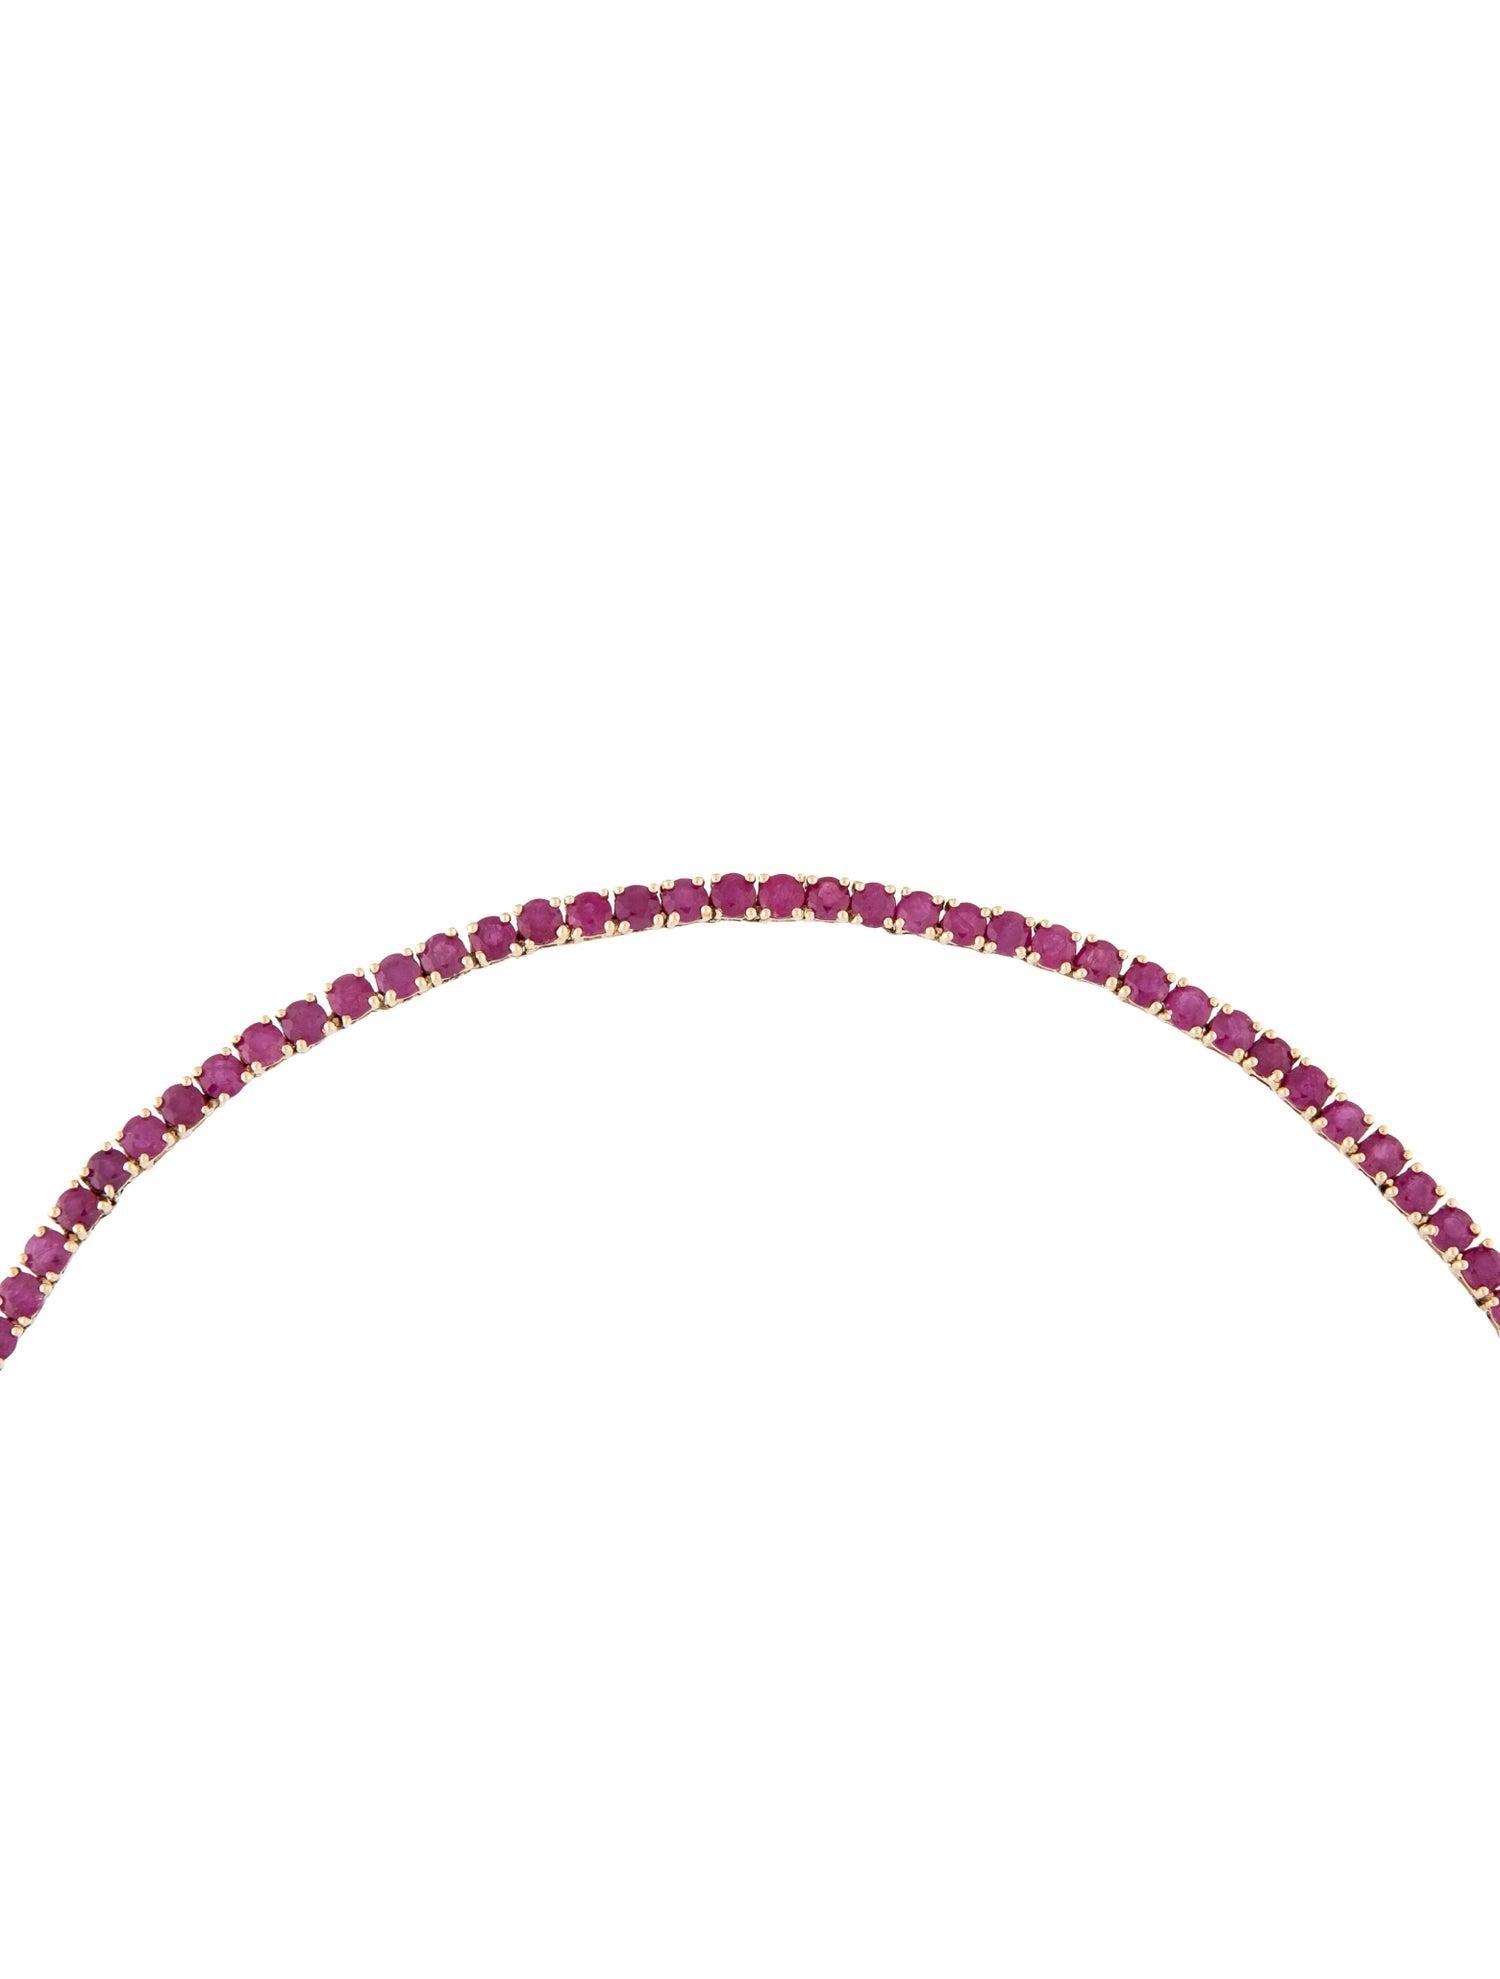 Women's Luxury 14K 10.17ctw Ruby Collar Necklace - Exquisite Gemstone Statement Piece